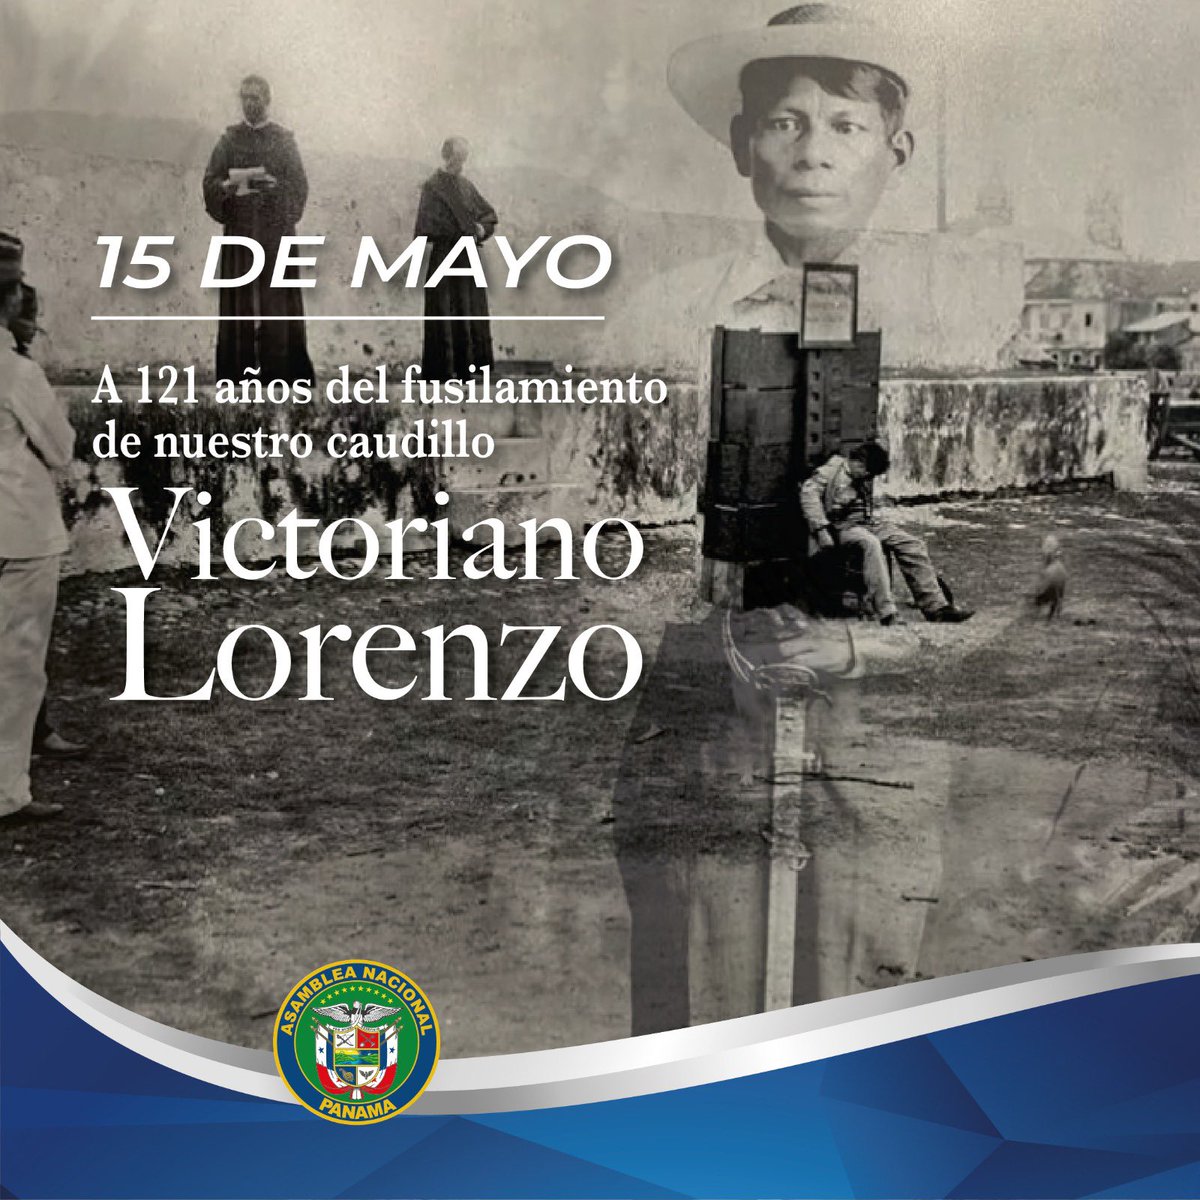 Que la memoria histórica no pierda vigencia en nuestros días. Hoy 15 de mayo se cumple 121 años del fusilamiento del caudillo Victoriano Lorenzo. #tuvozimporta